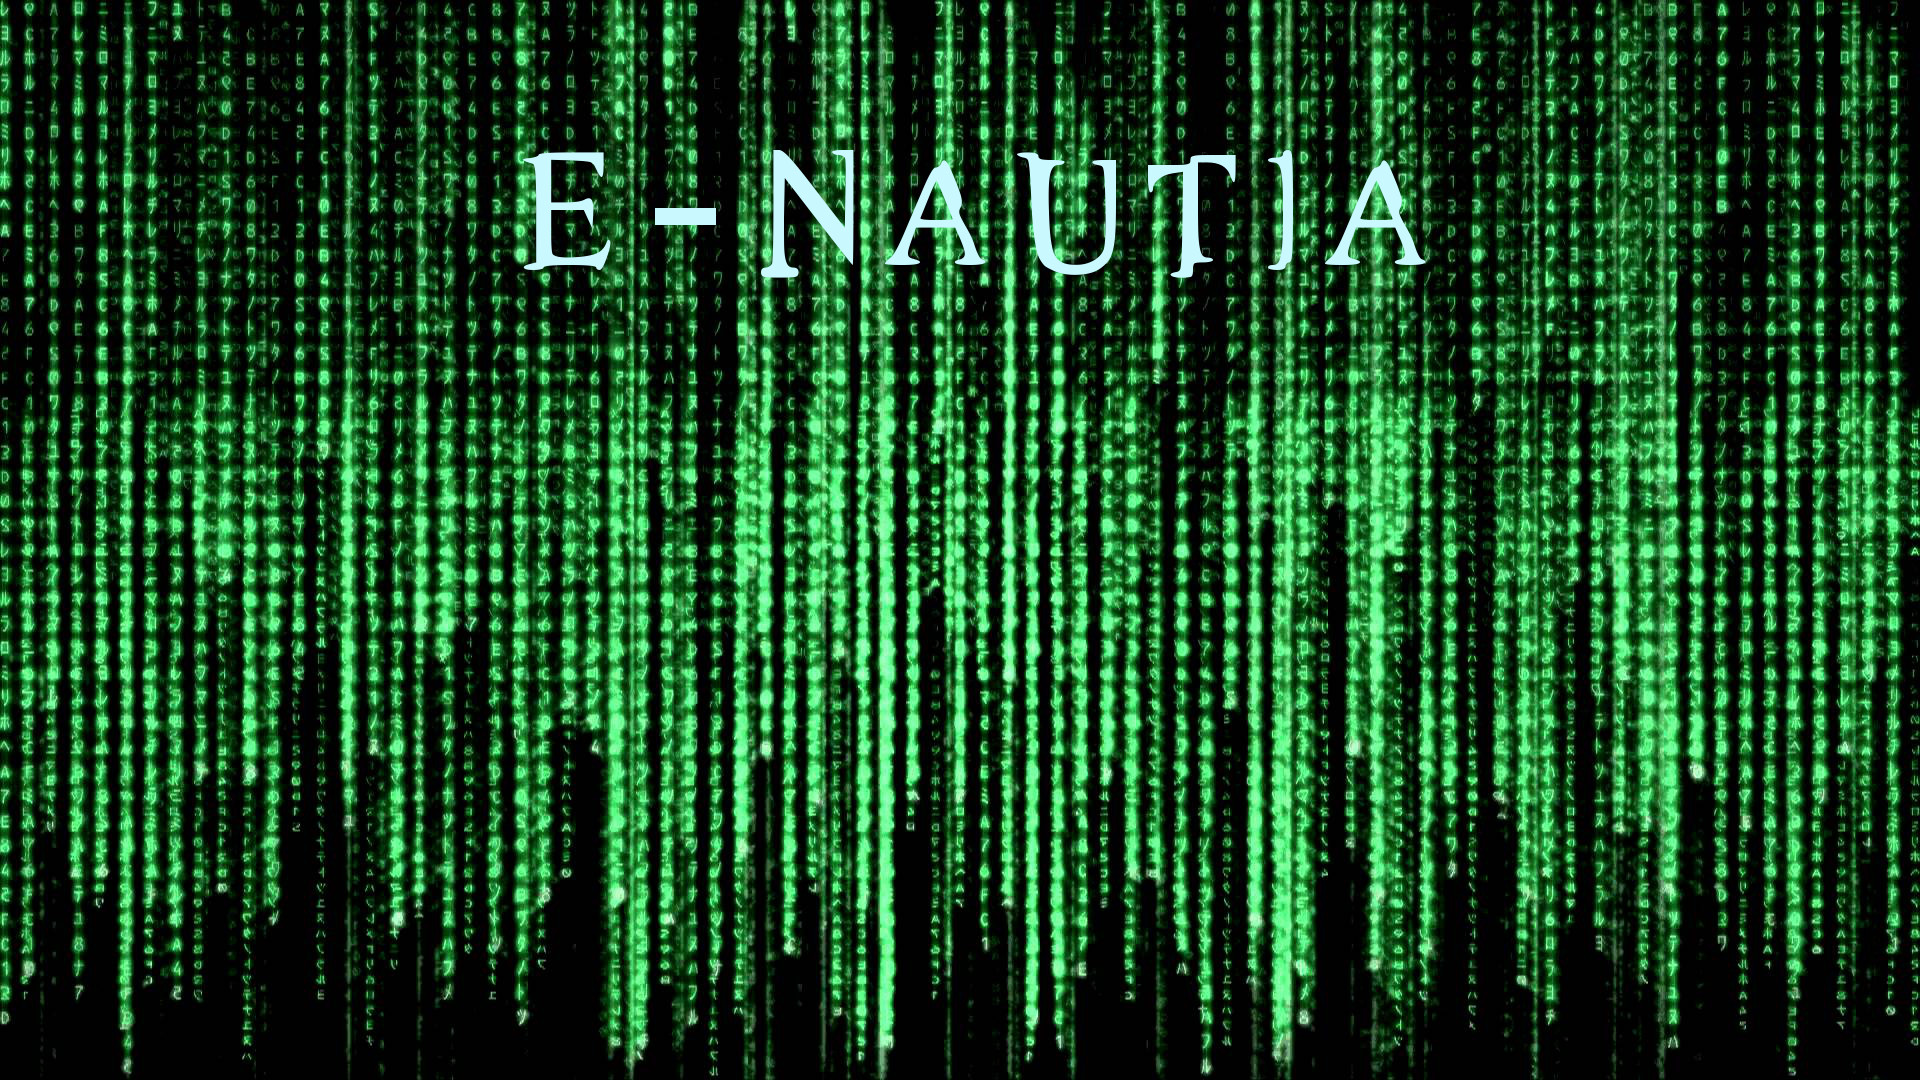 Enter the e-nautia